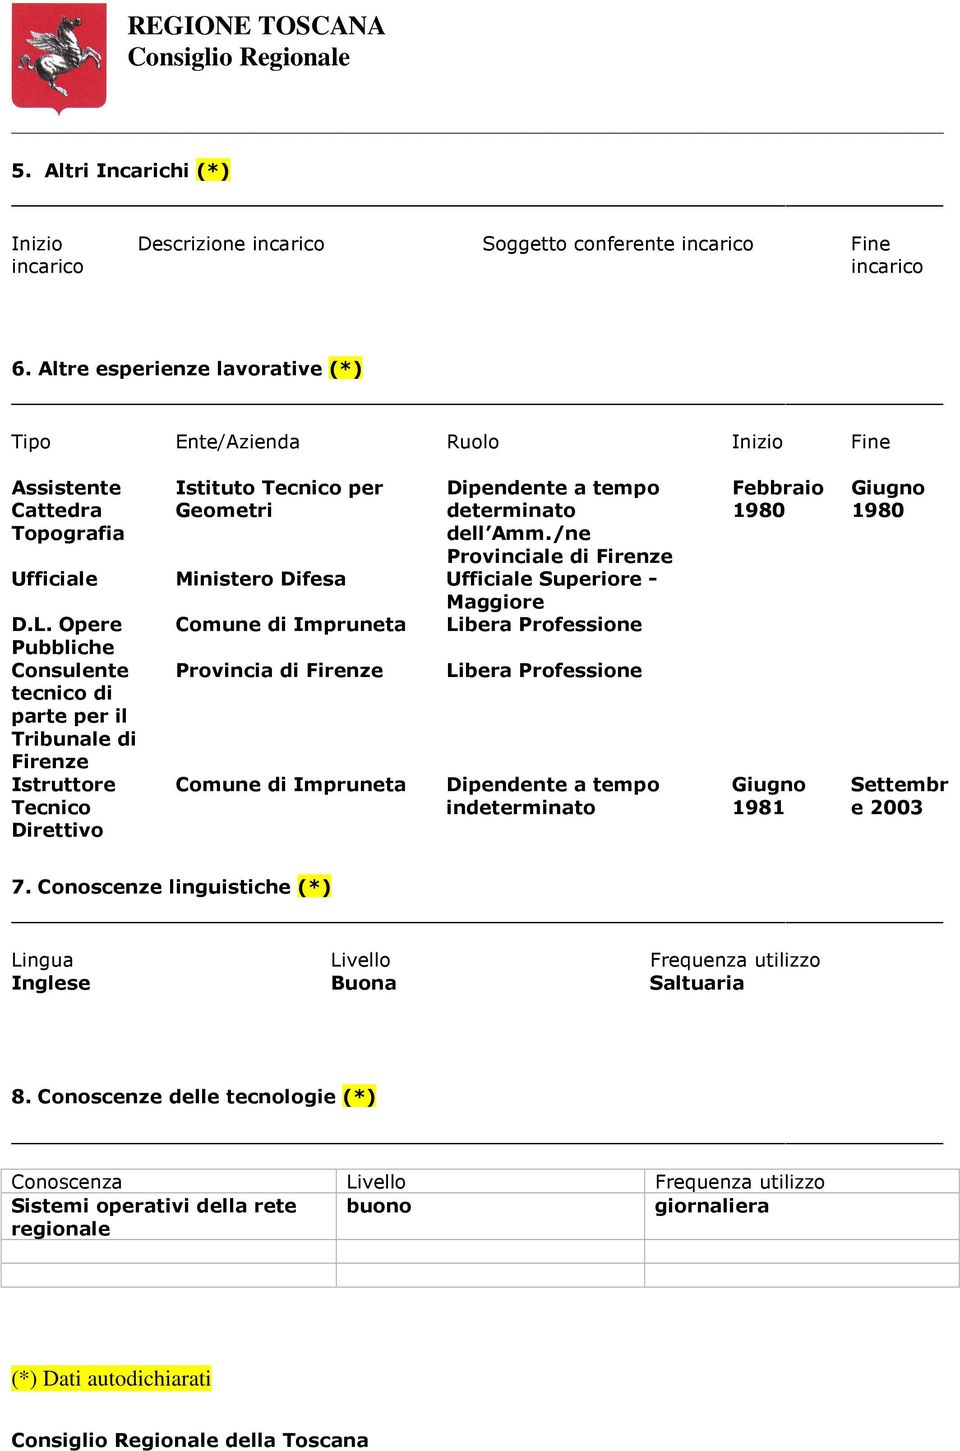 /ne Provinciale di Firenze Ufficiale Ministero Difesa Ufficiale Superiore - Maggiore D.L.